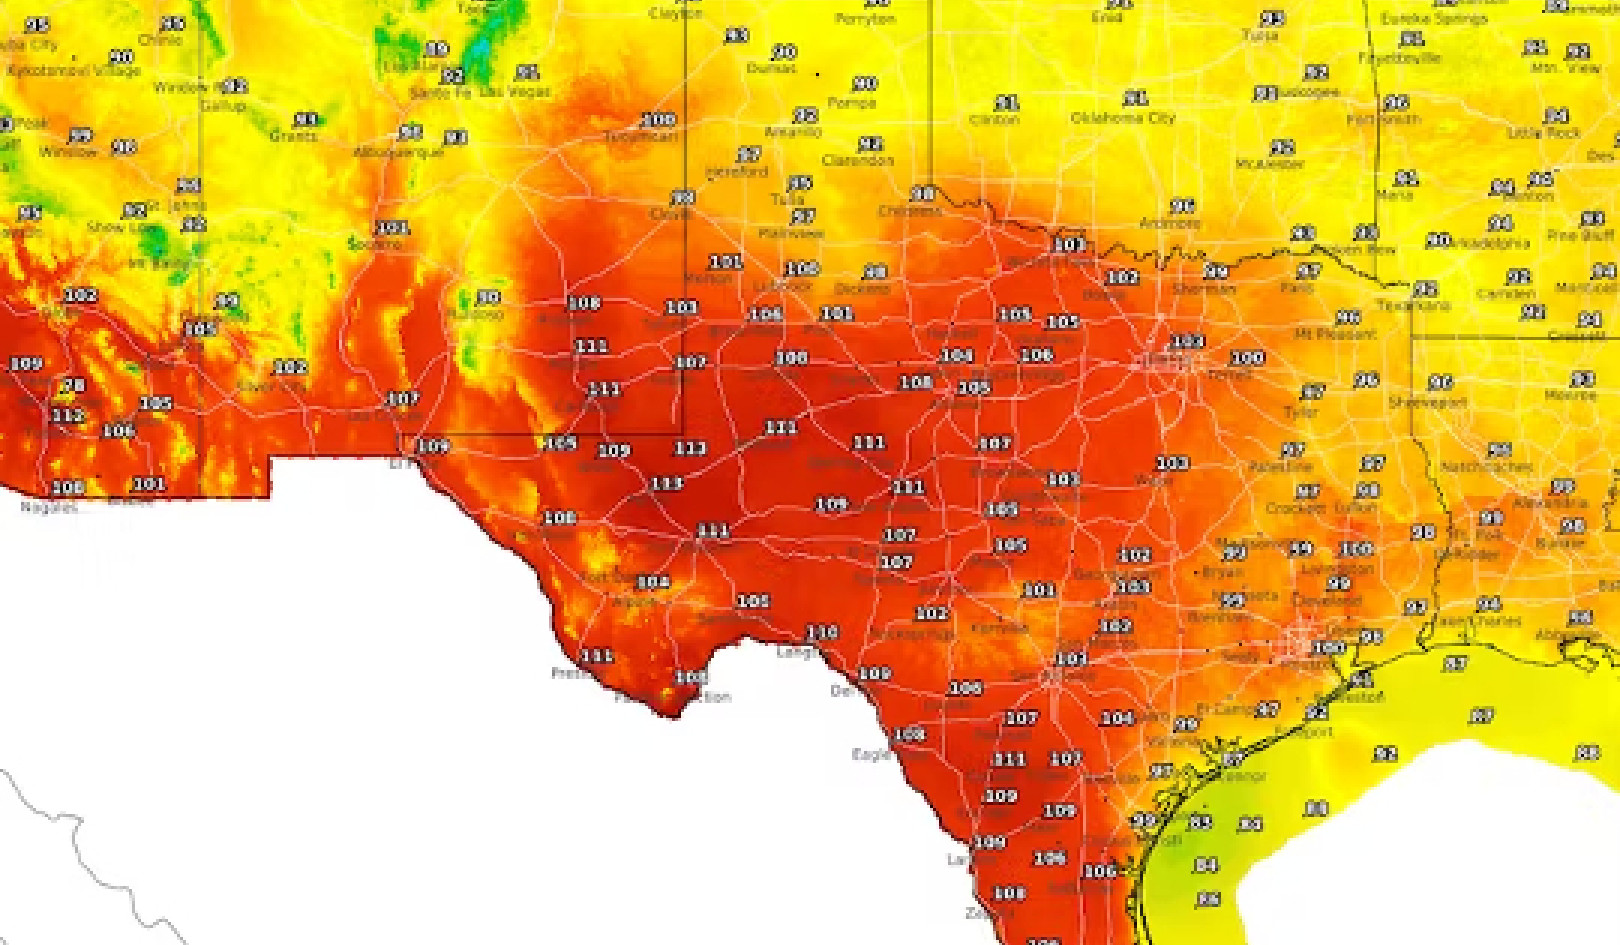 Comprendre les dômes de chaleur : le phénomène météorologique Baking Texas expliqué